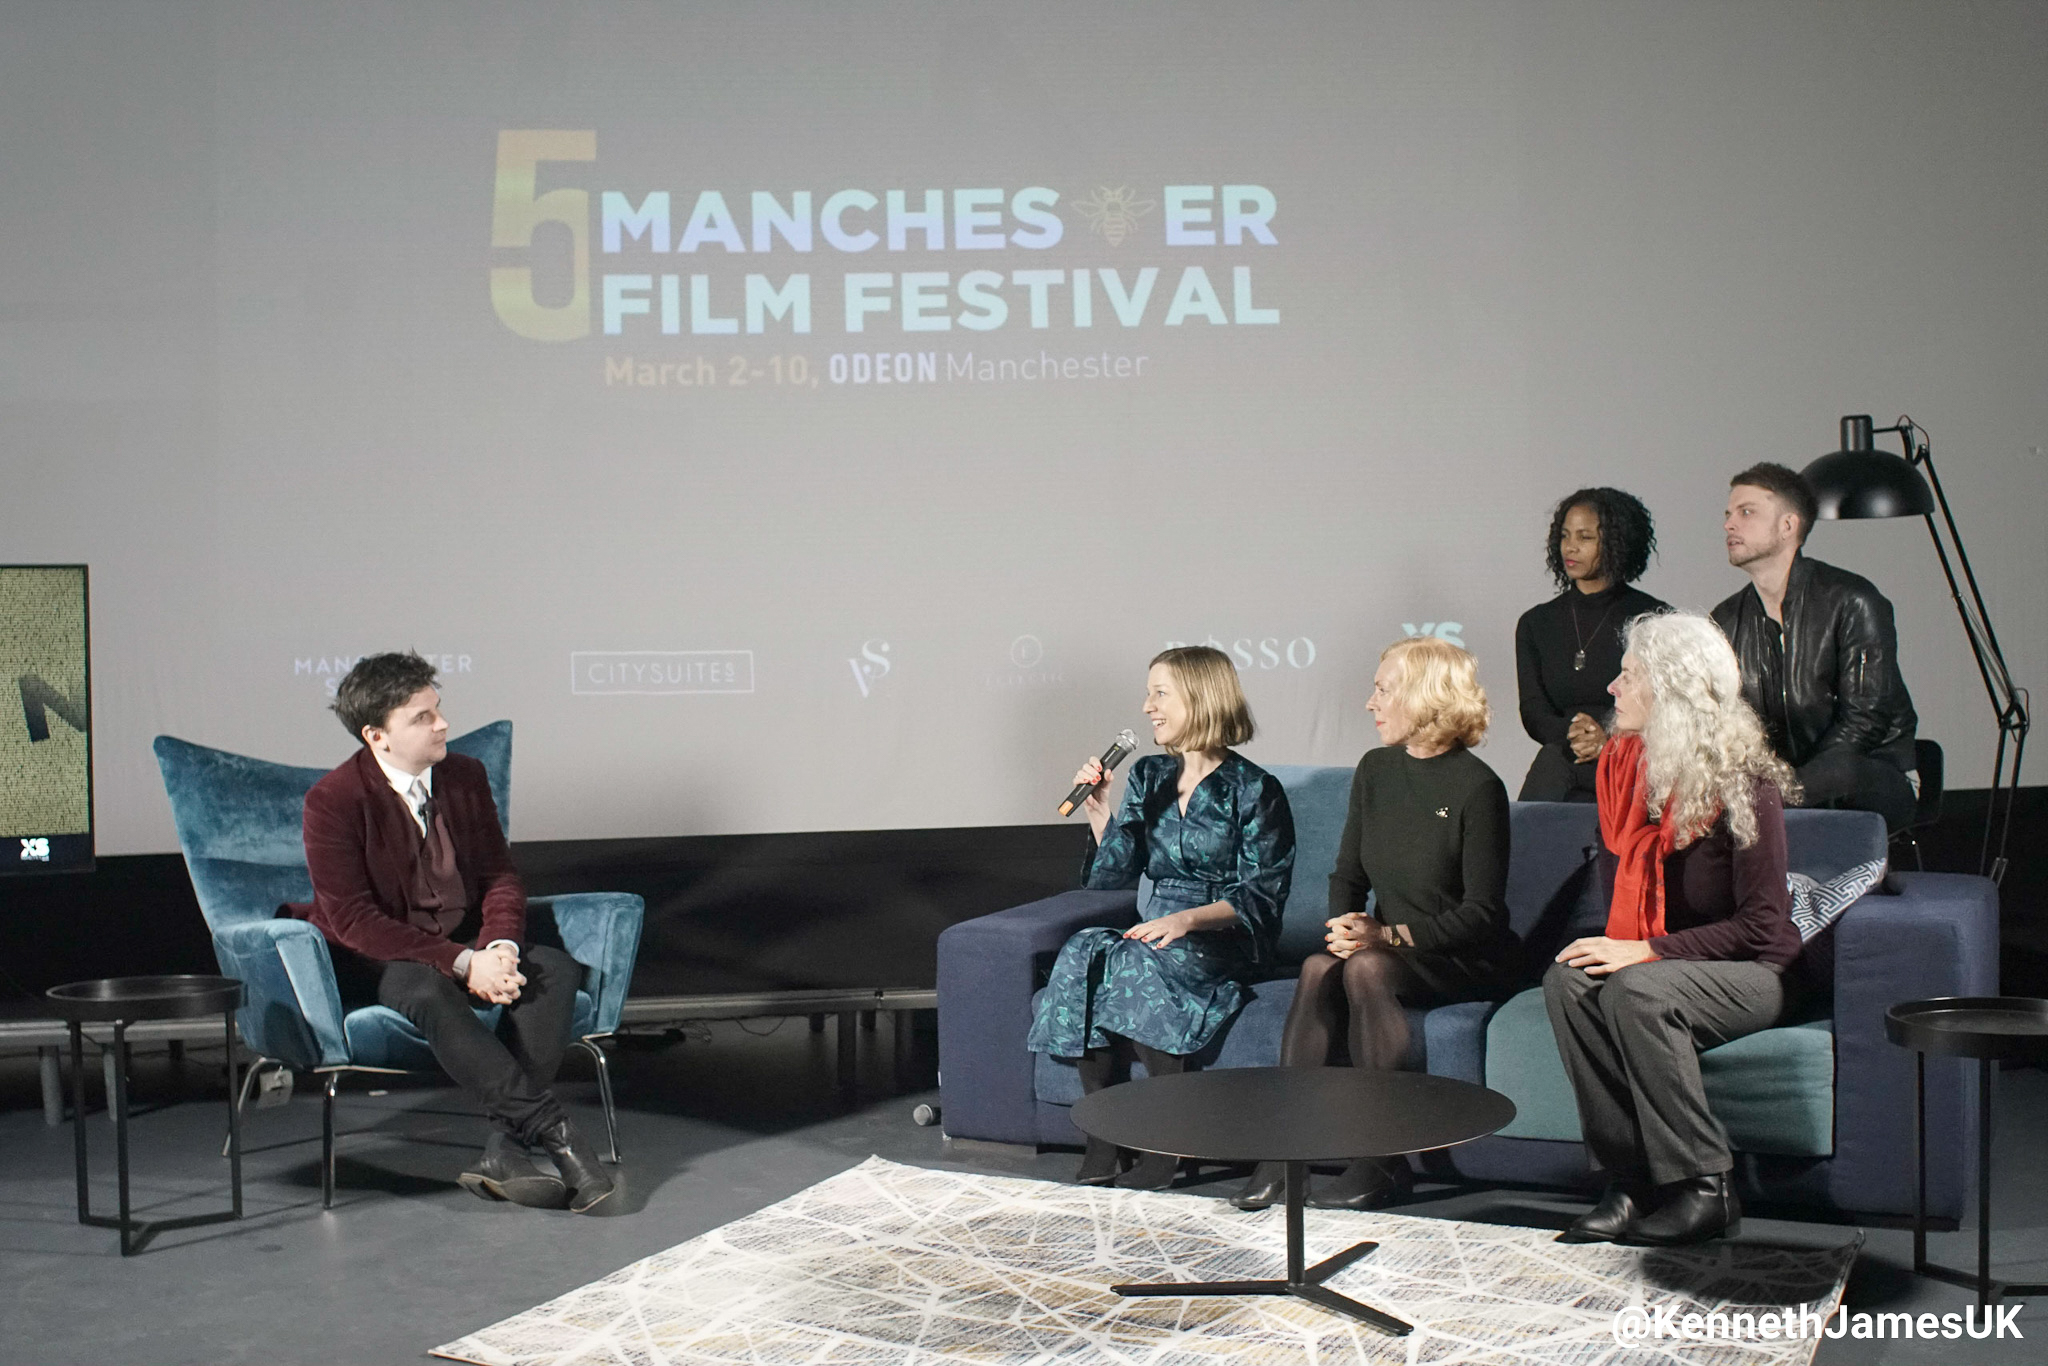 Manchester Film Festival